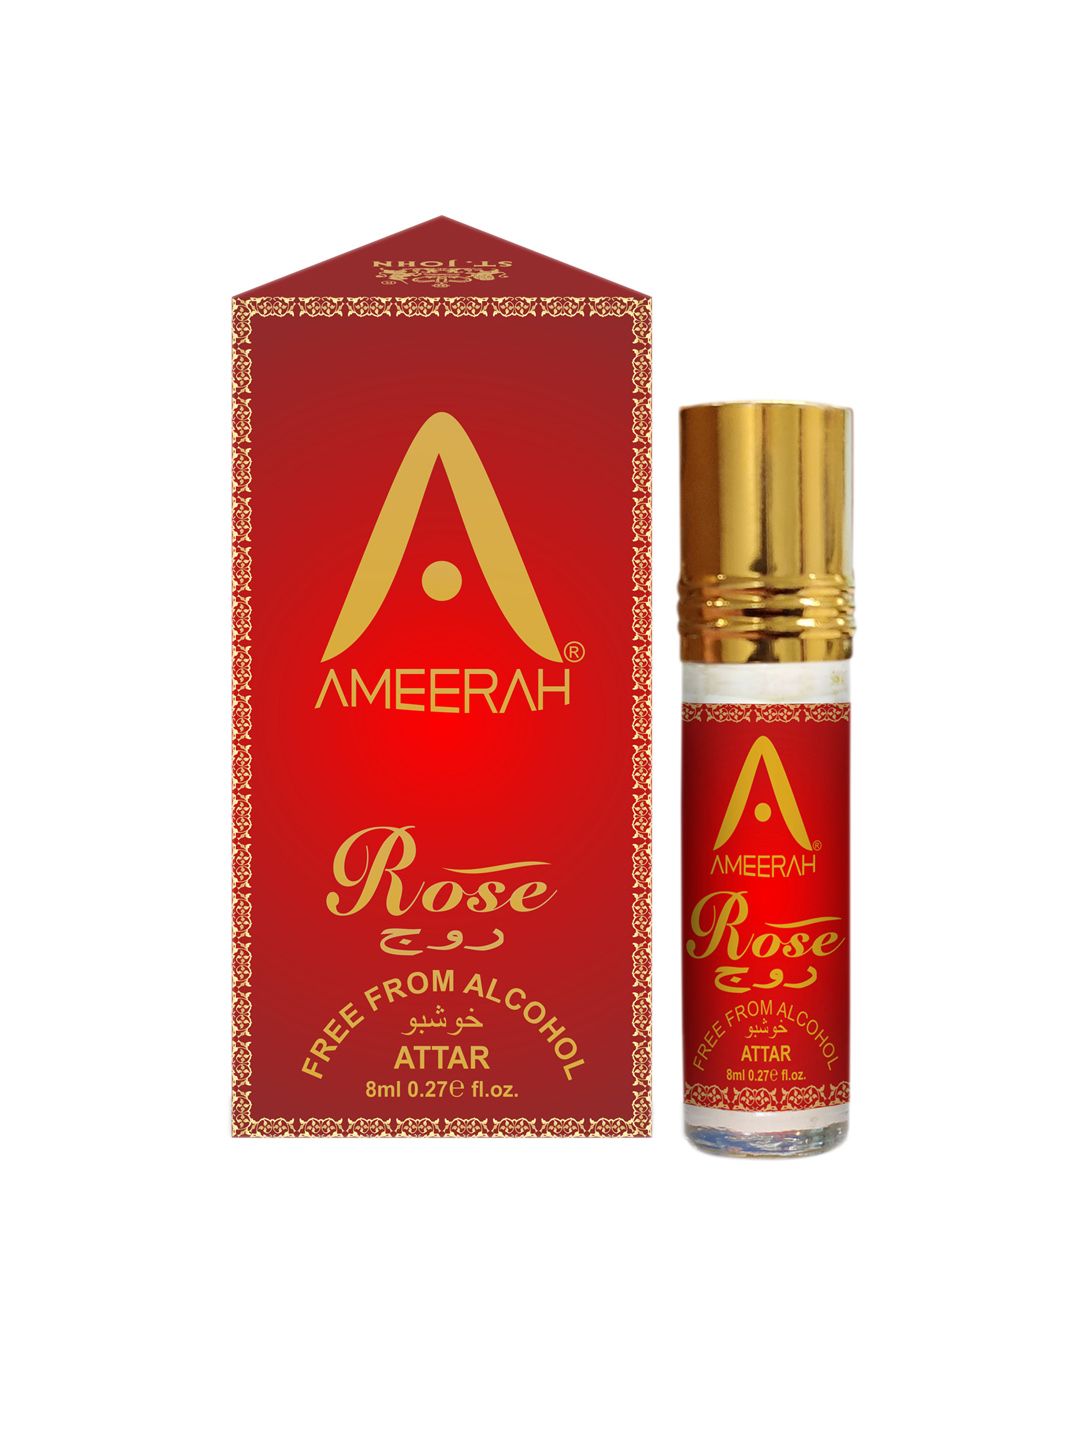 St. John Ameerah Rose Attar - 8 ml Price in India